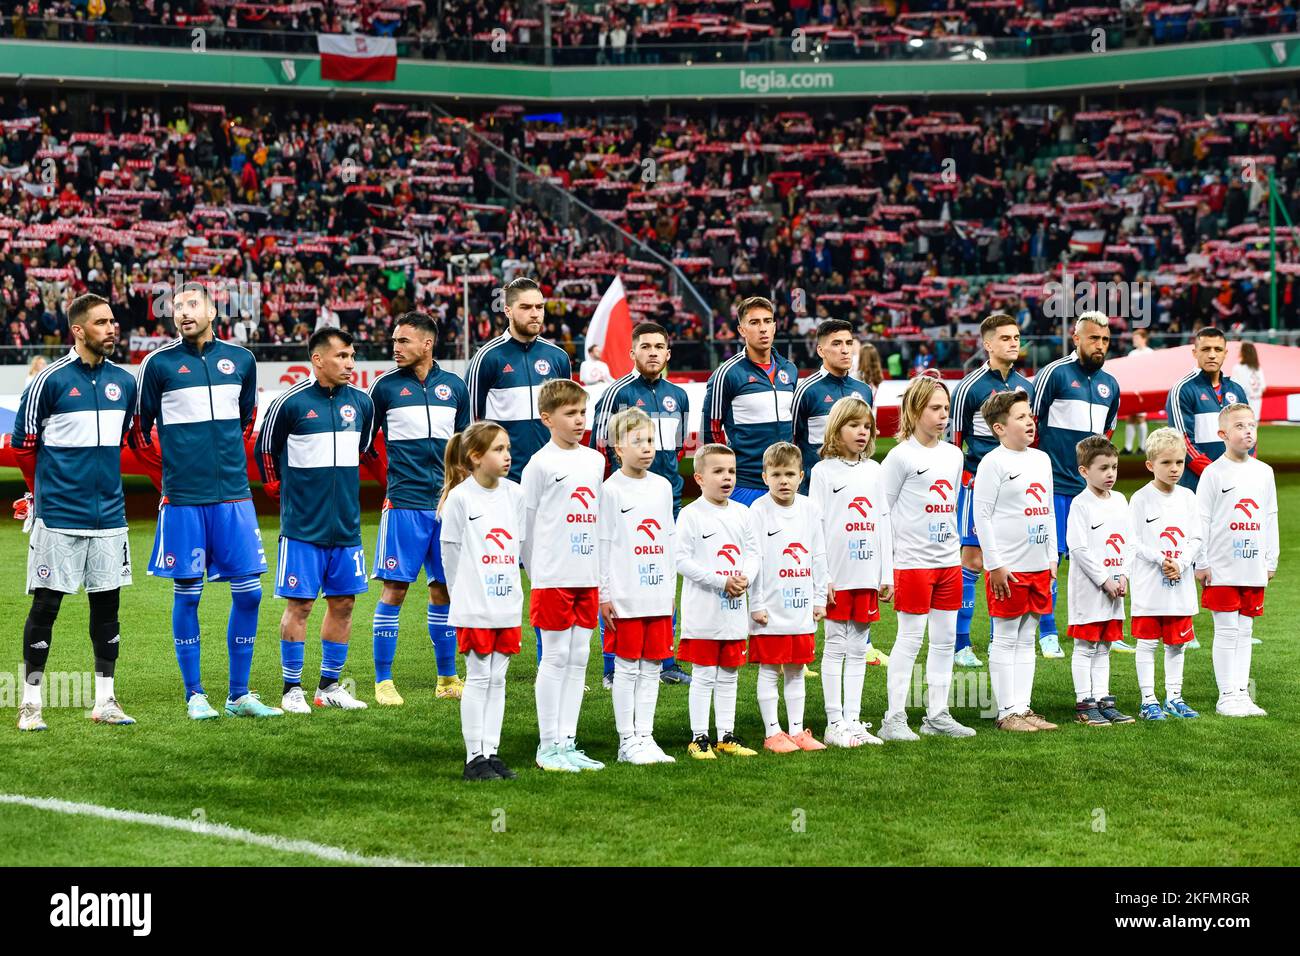 WARSZAWA, POLEN - 16. NOVEMBER 2022: Fußballfreundschaftsspiel Polen gegen Chile 1:0. Chilenische Mannschaft vor dem Spiel. Stockfoto